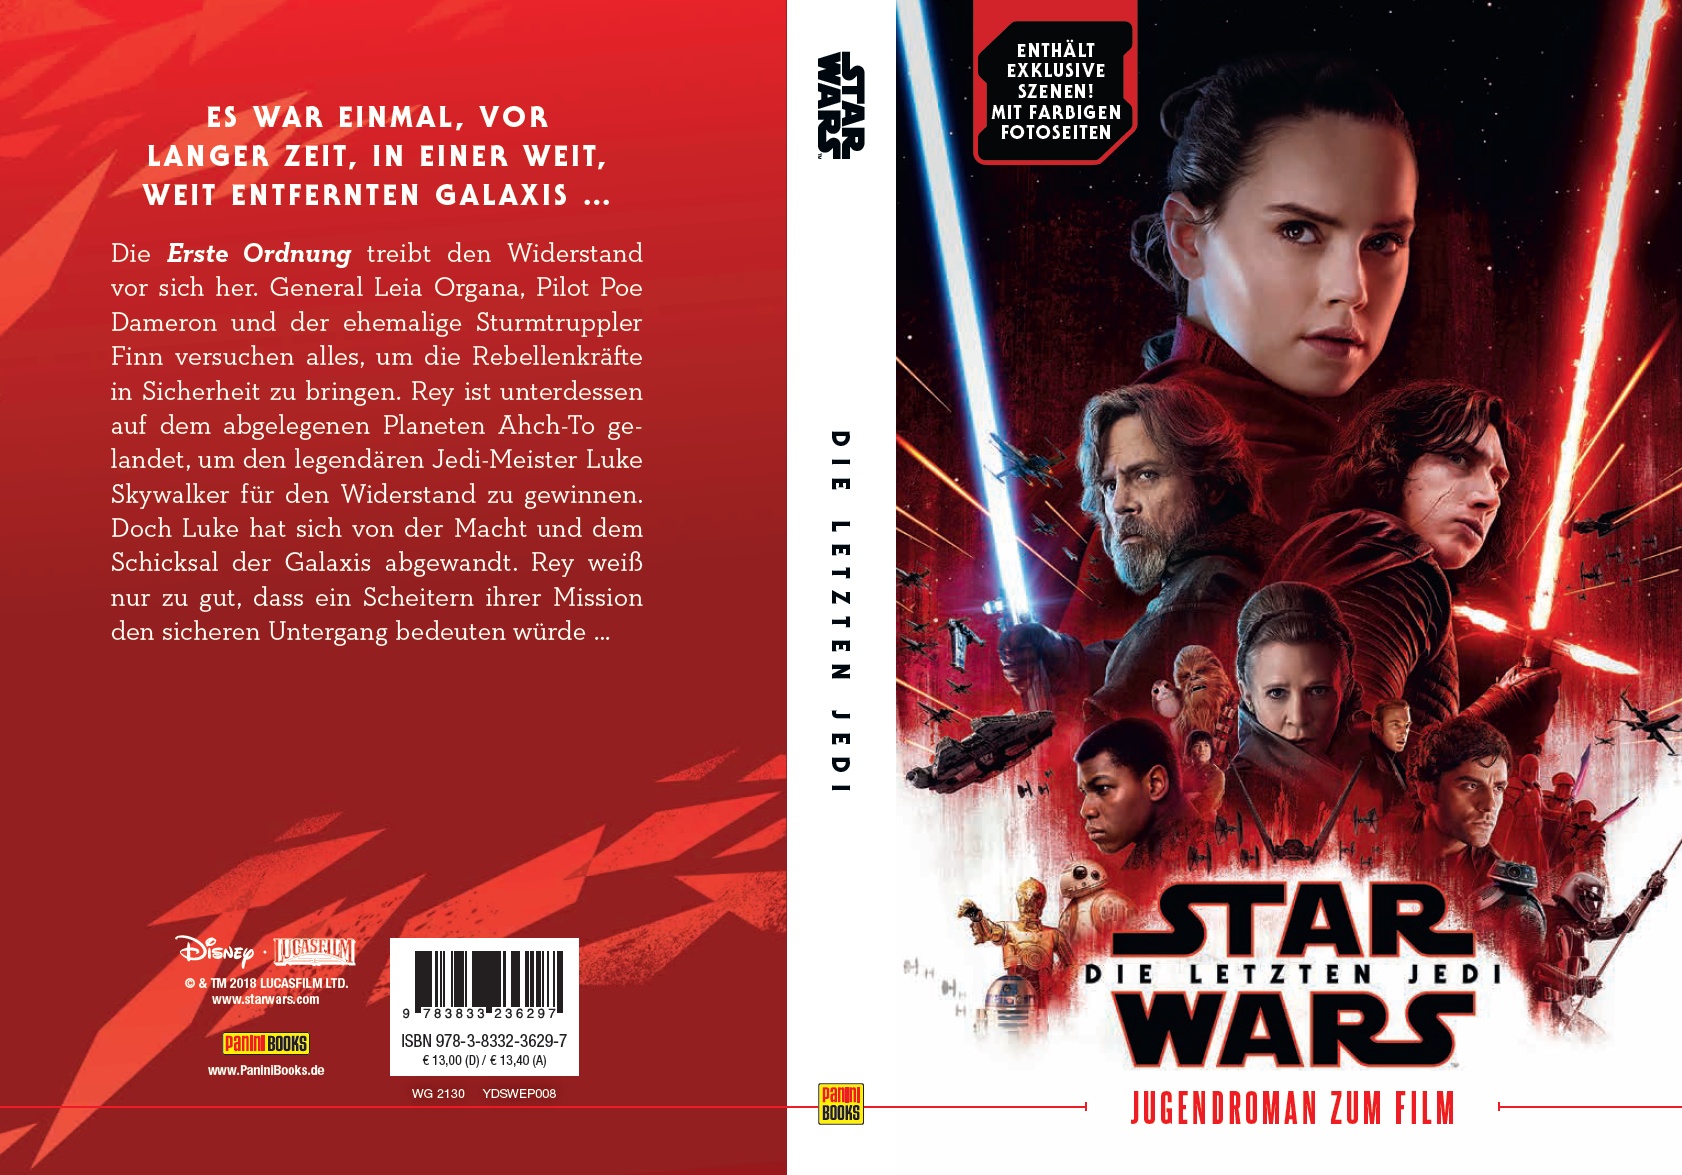 Star Wars: Die letzten Jedi - Jugendroman zum Film (23.04.2018)